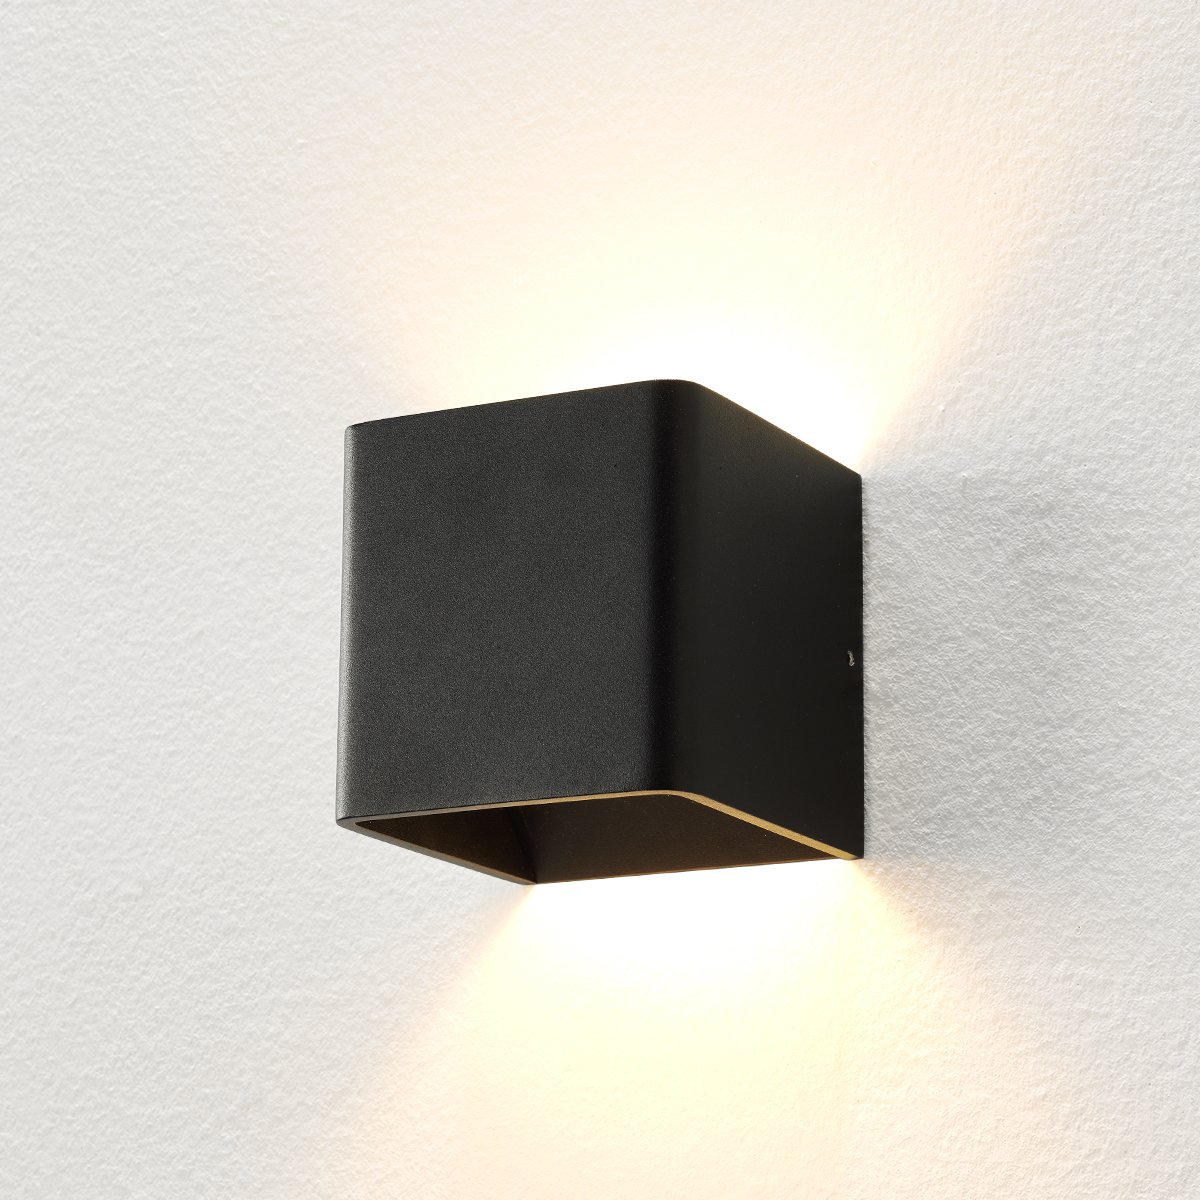 Design Beleuchtung Wandlampe led up down schwarz Carré - 10 cm